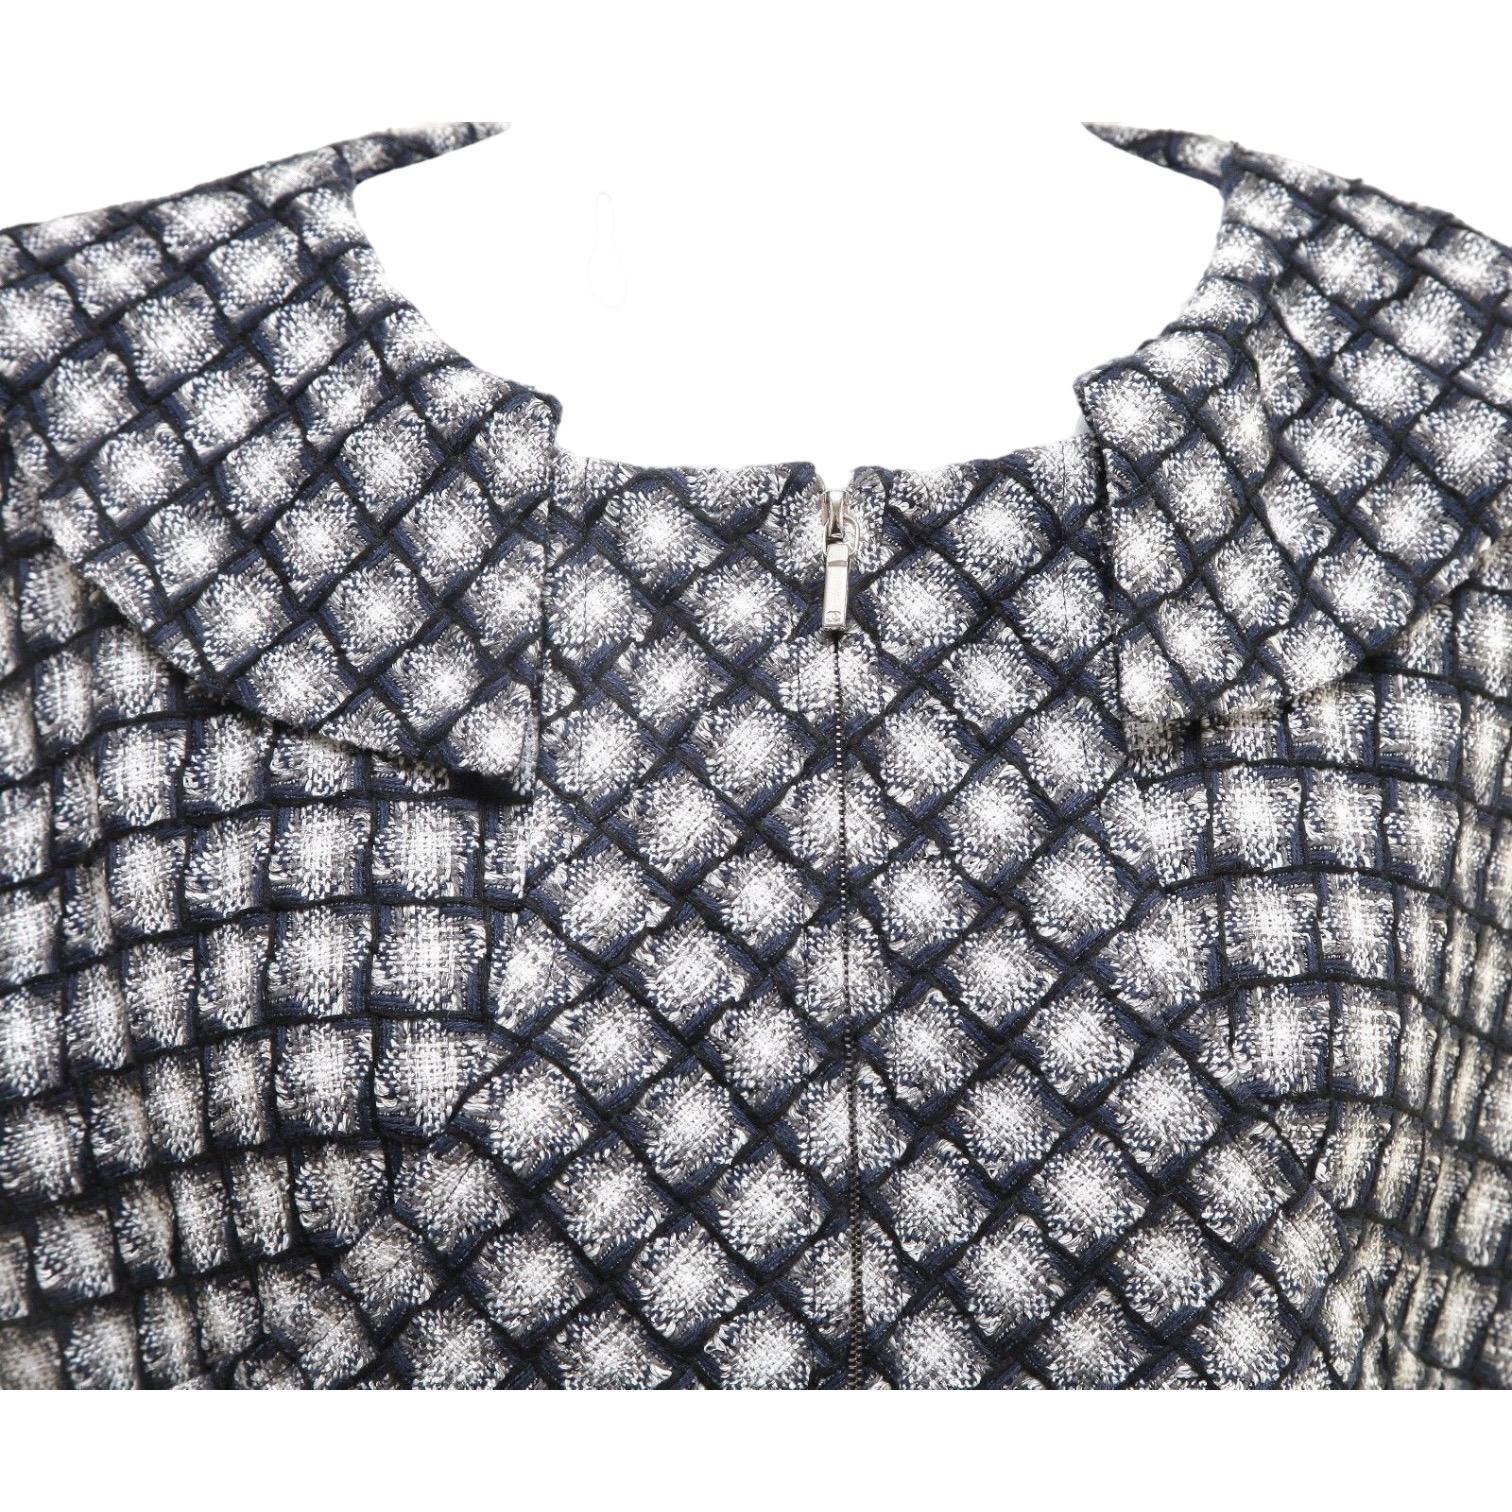 Women's CHANEL Dress Tweed Knit Cap Sleeve Shift Zipper Multi Color Zipper Sz 40 For Sale